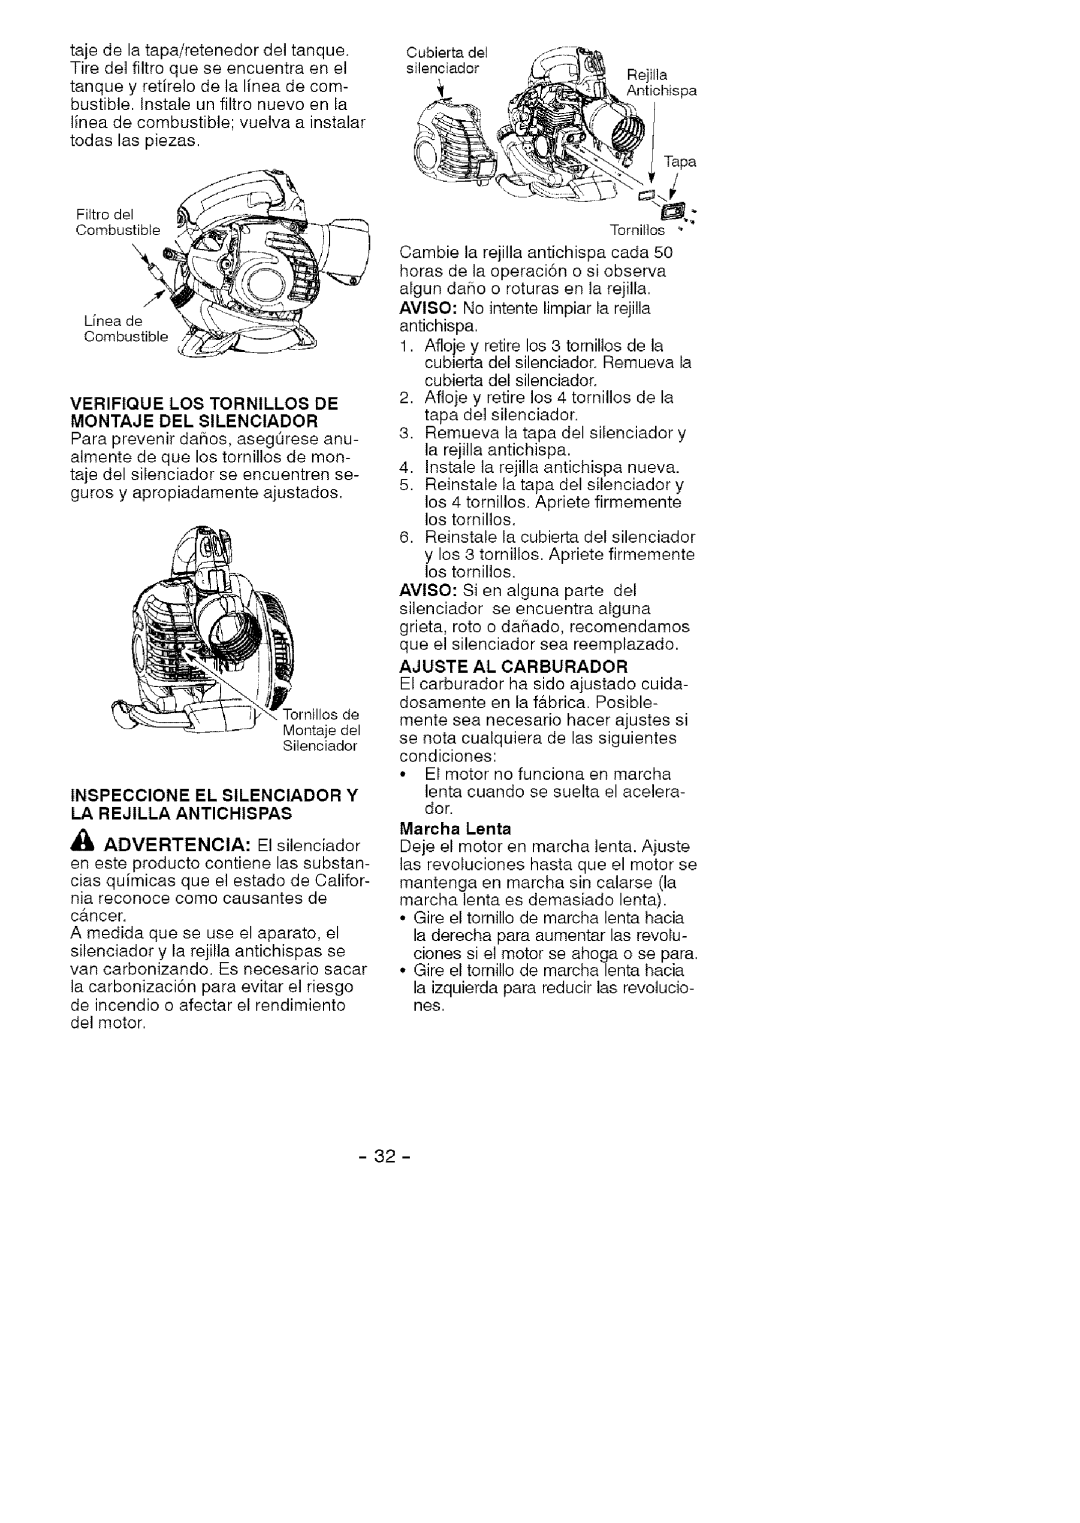 Craftsman 358.79477 manual Verifique Los Tornillos De, Montaje Del Silenciador, Inspeccione El Silenciador Y, Marcha Lenta 